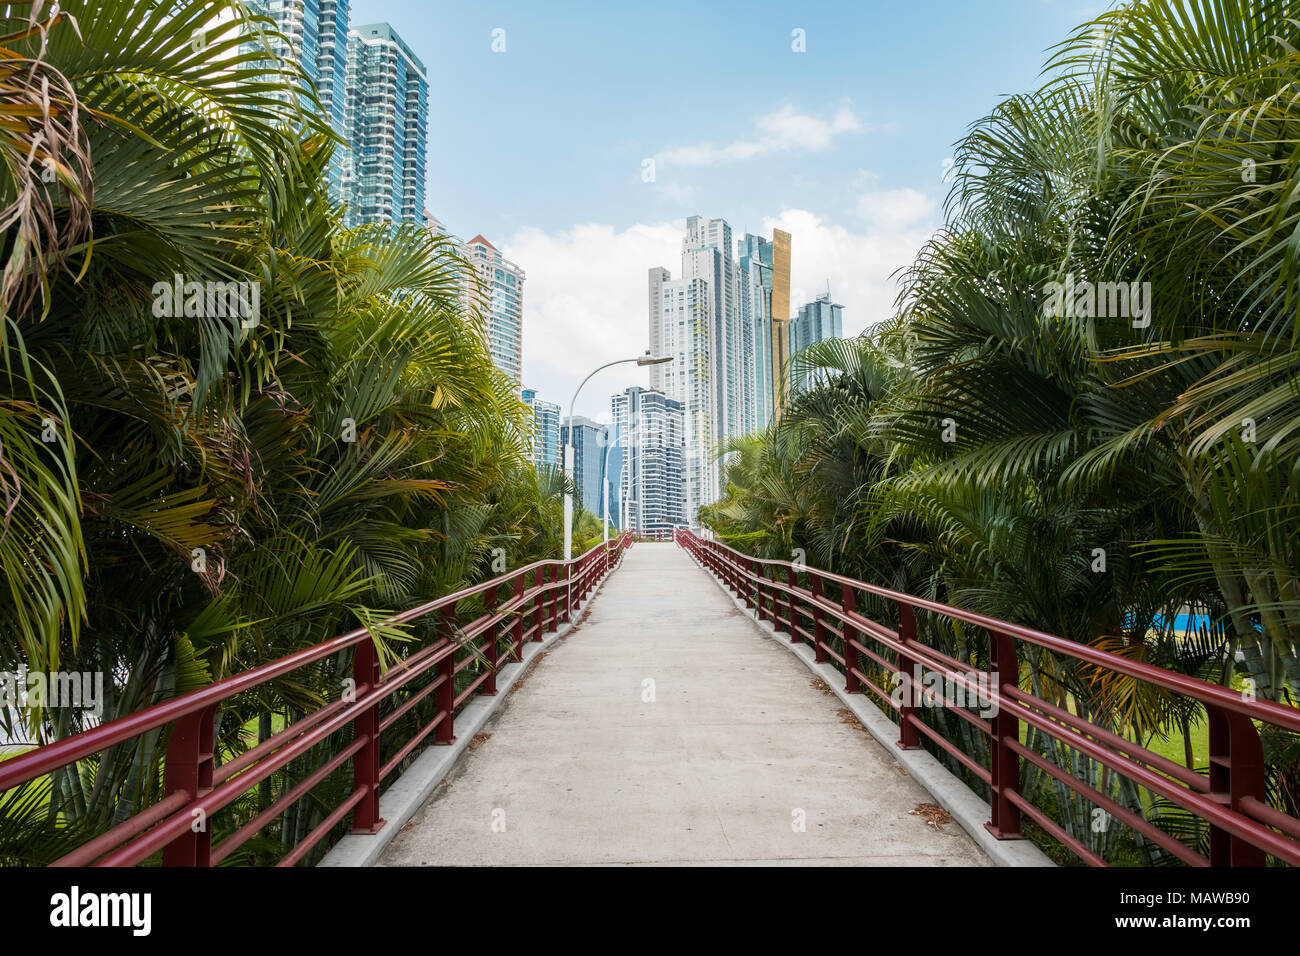 Geraden Weg - Fußgänger-Überführung/Gehweg mit Sicht auf die City Skyline Hintergrund und Palmen, Panama City - Stockfoto